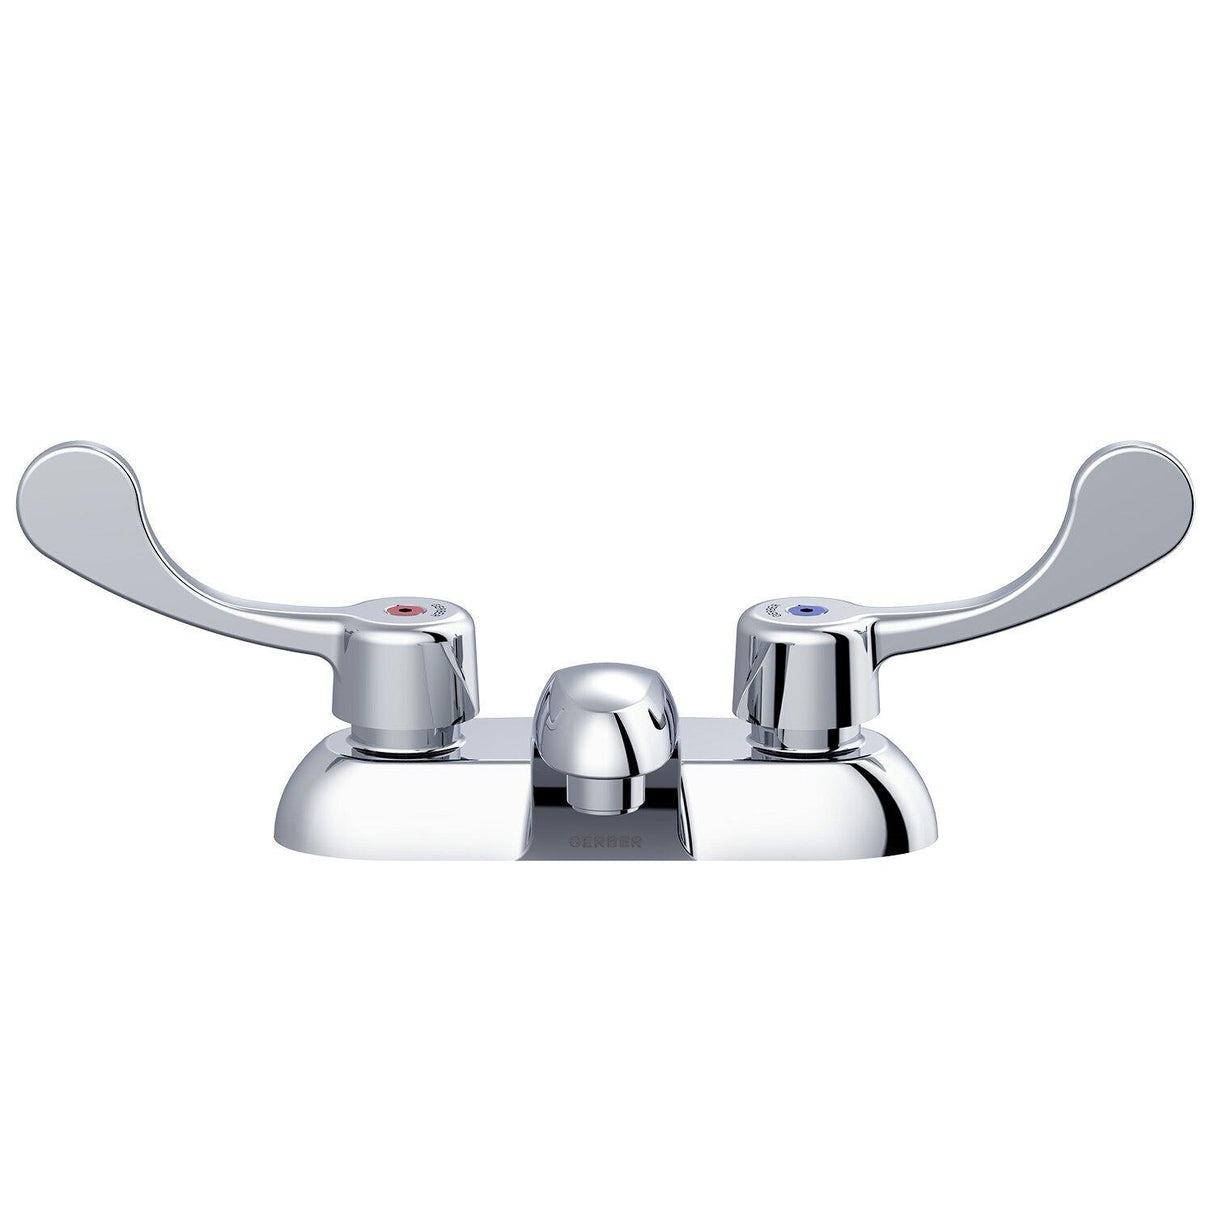 Gerber GC044541 Chrome Commercial Two Handle Centerset Lavatory Faucet W/ Wrist BLA...